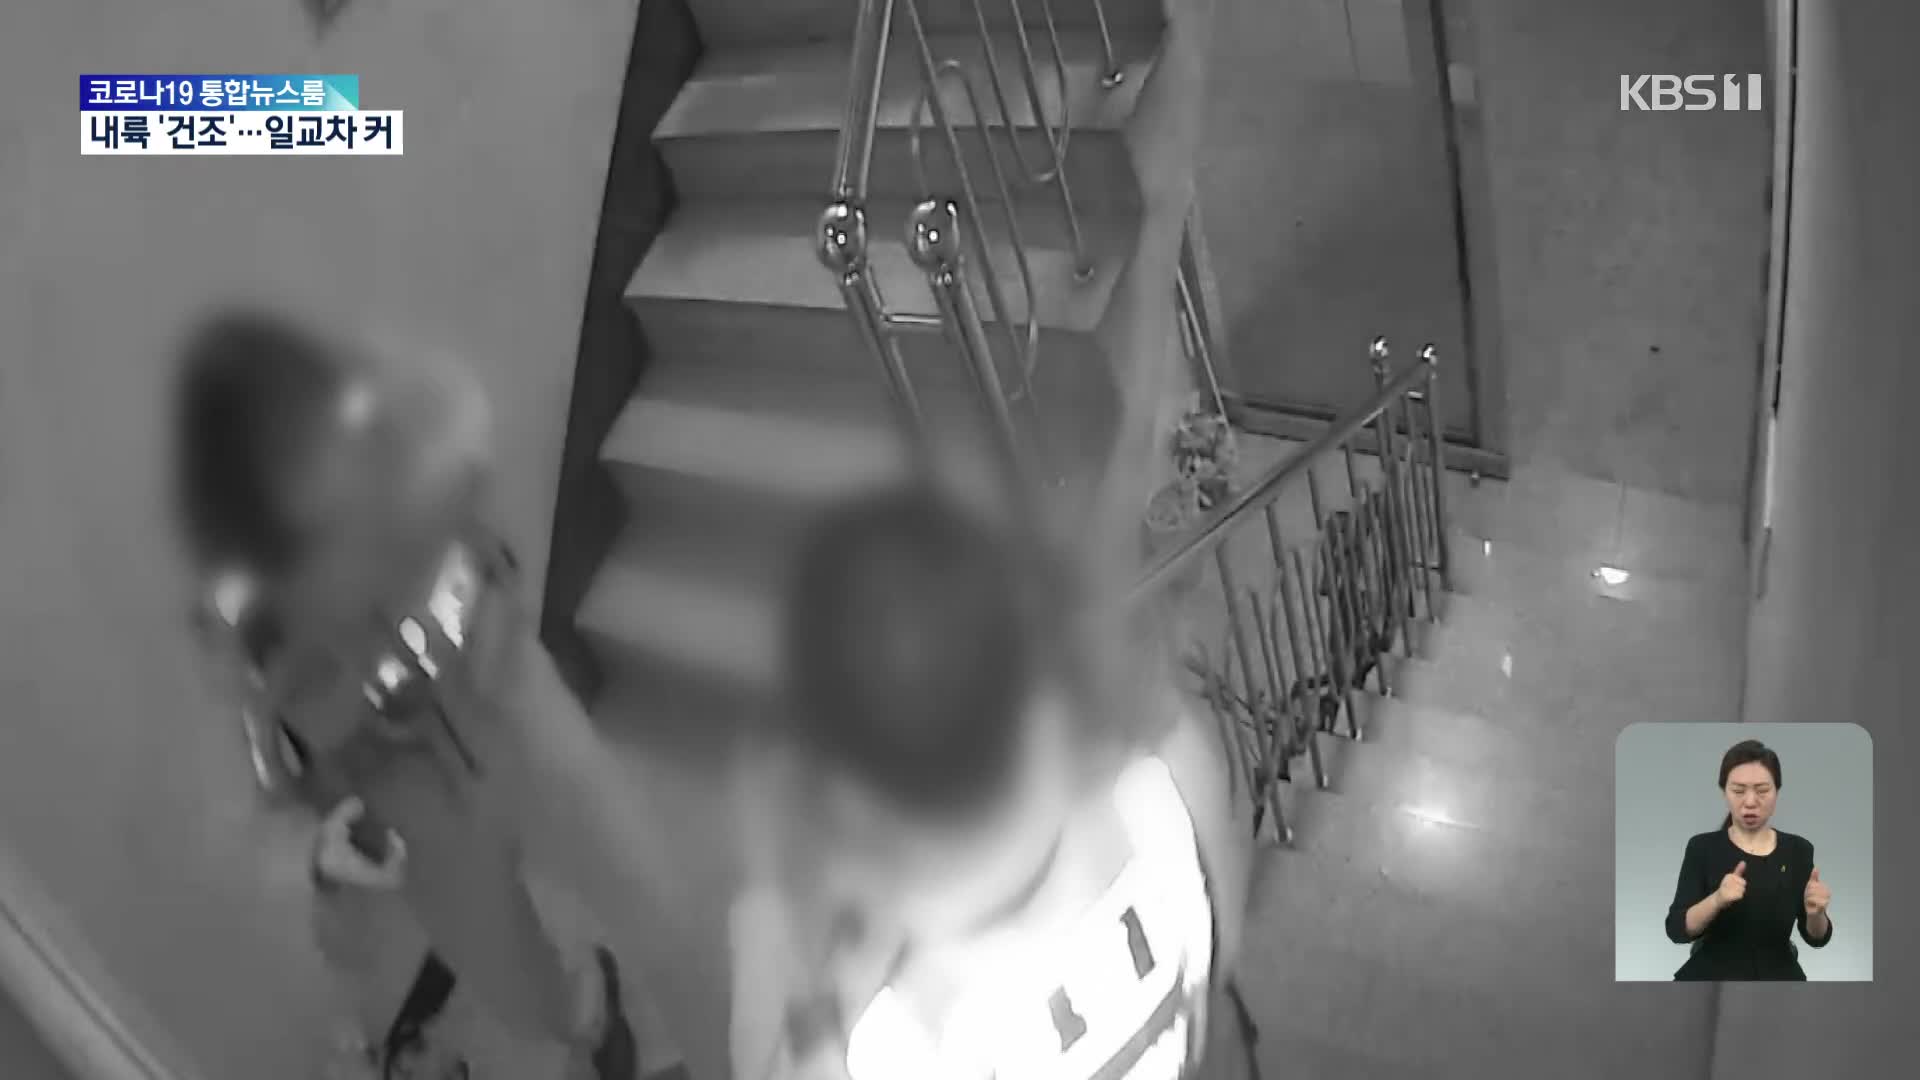 ‘층간소음 흉기 난동’ CCTV 영상 공개…‘우왕좌왕’ 경찰, 무엇을 놓쳤나?